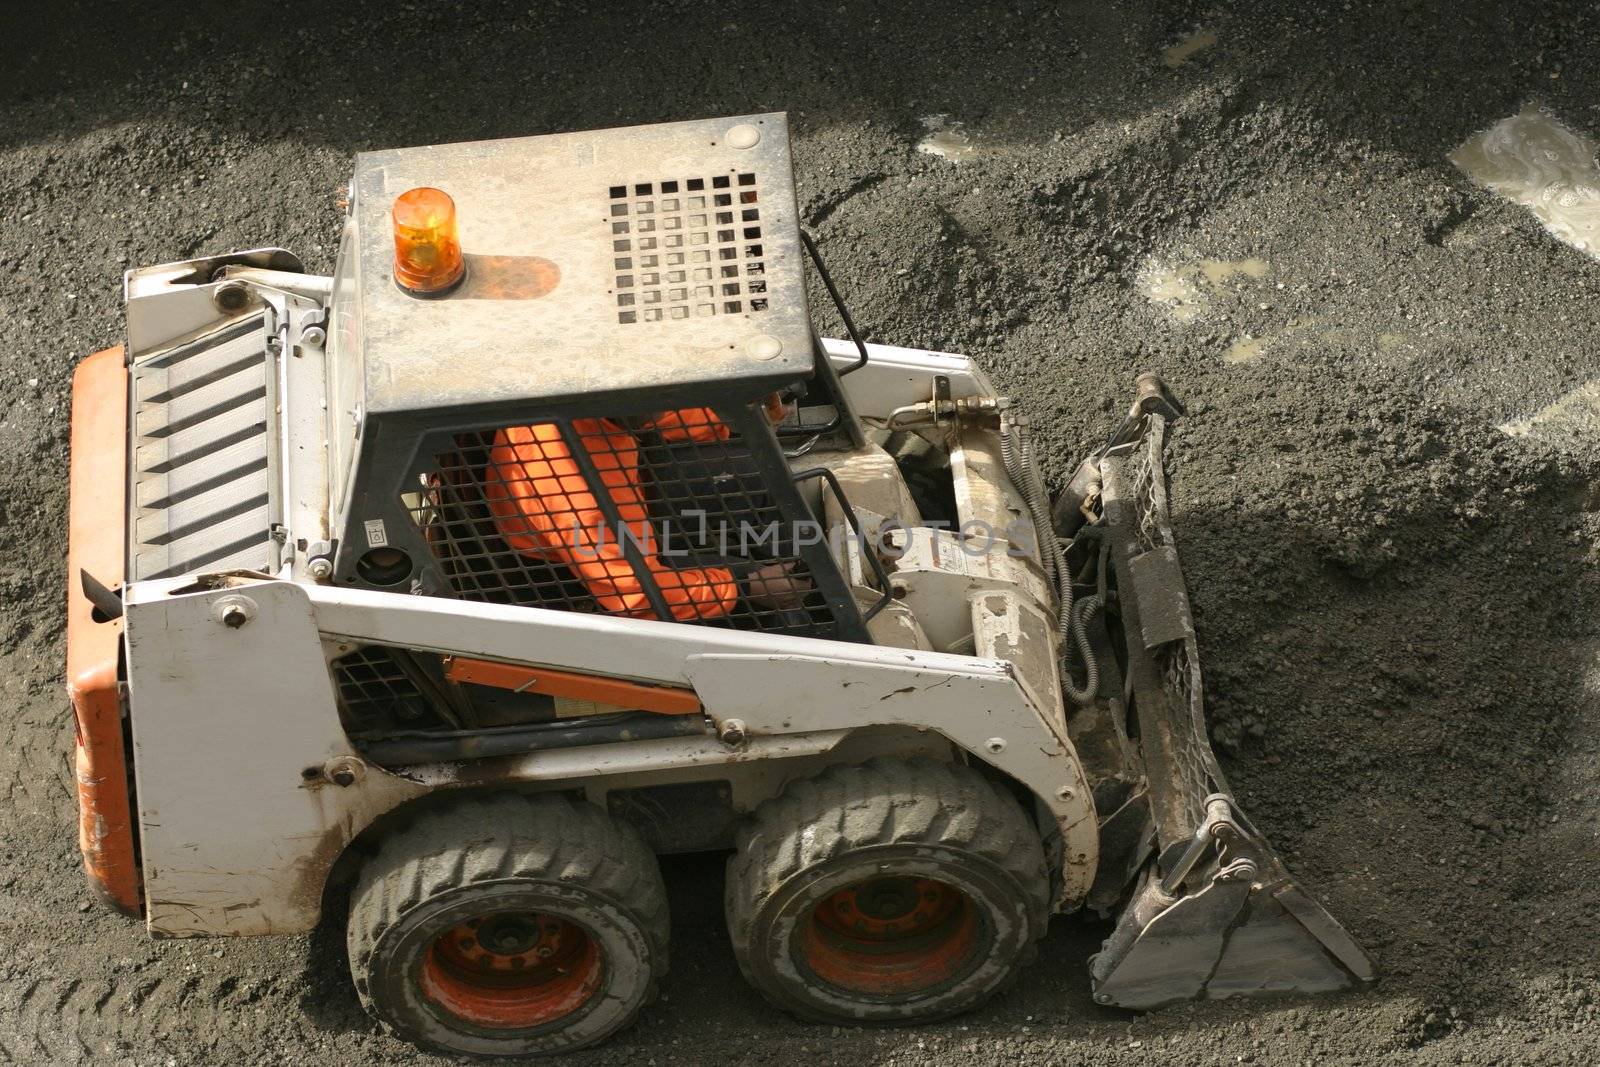 Bobcat scooping up gravel
